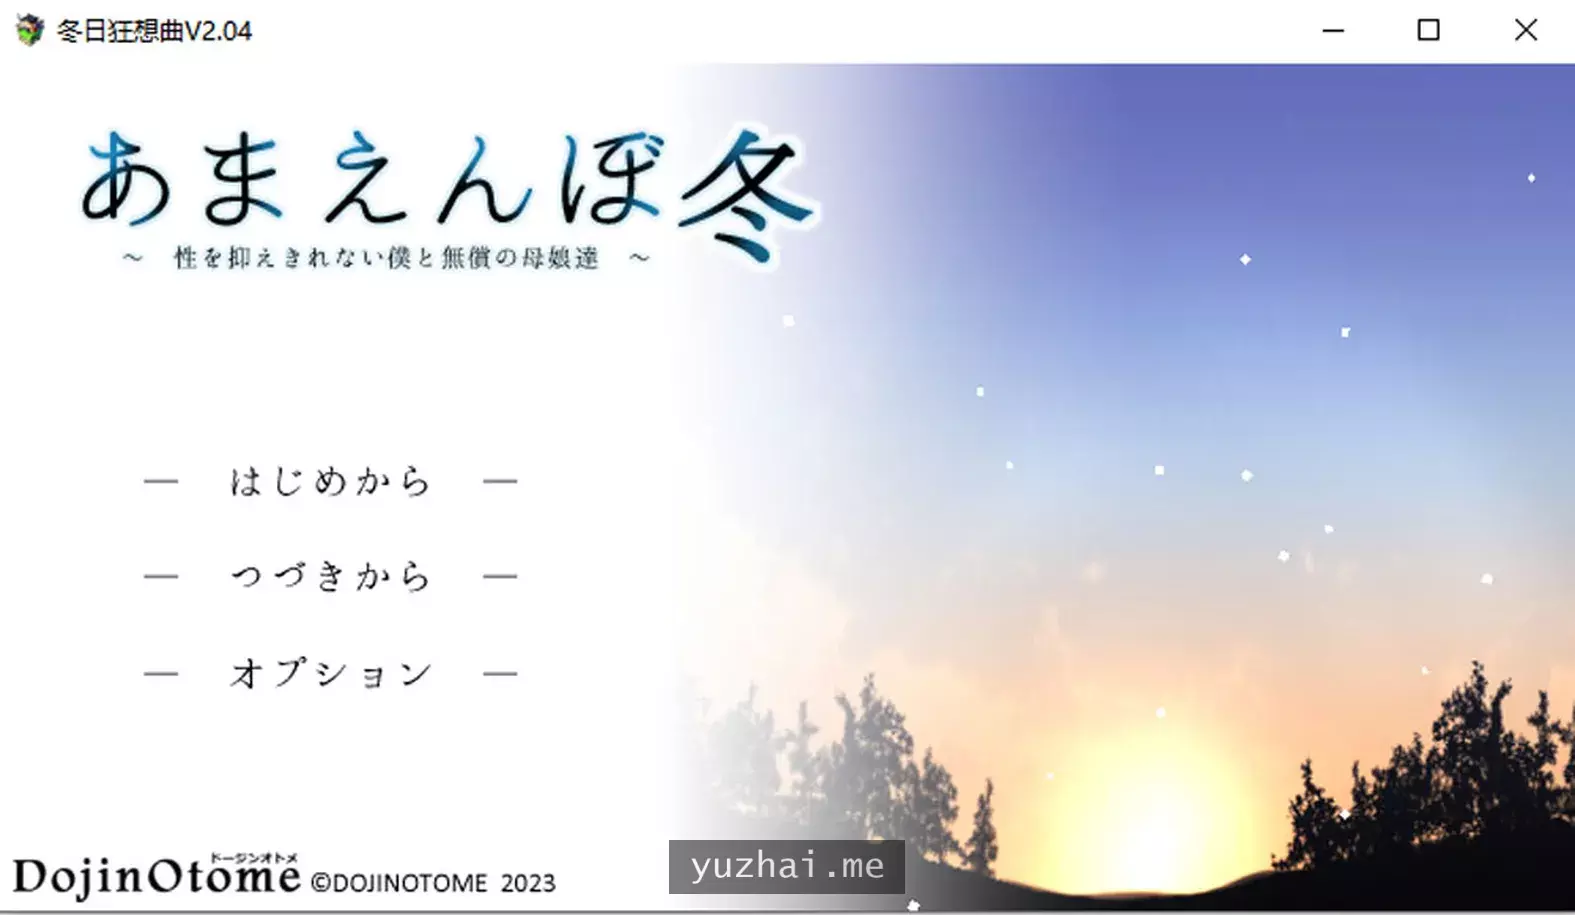 冬日狂想曲 Ver2.04 AI汉化正式版★CV[2.6G] 电脑游戏 第1张